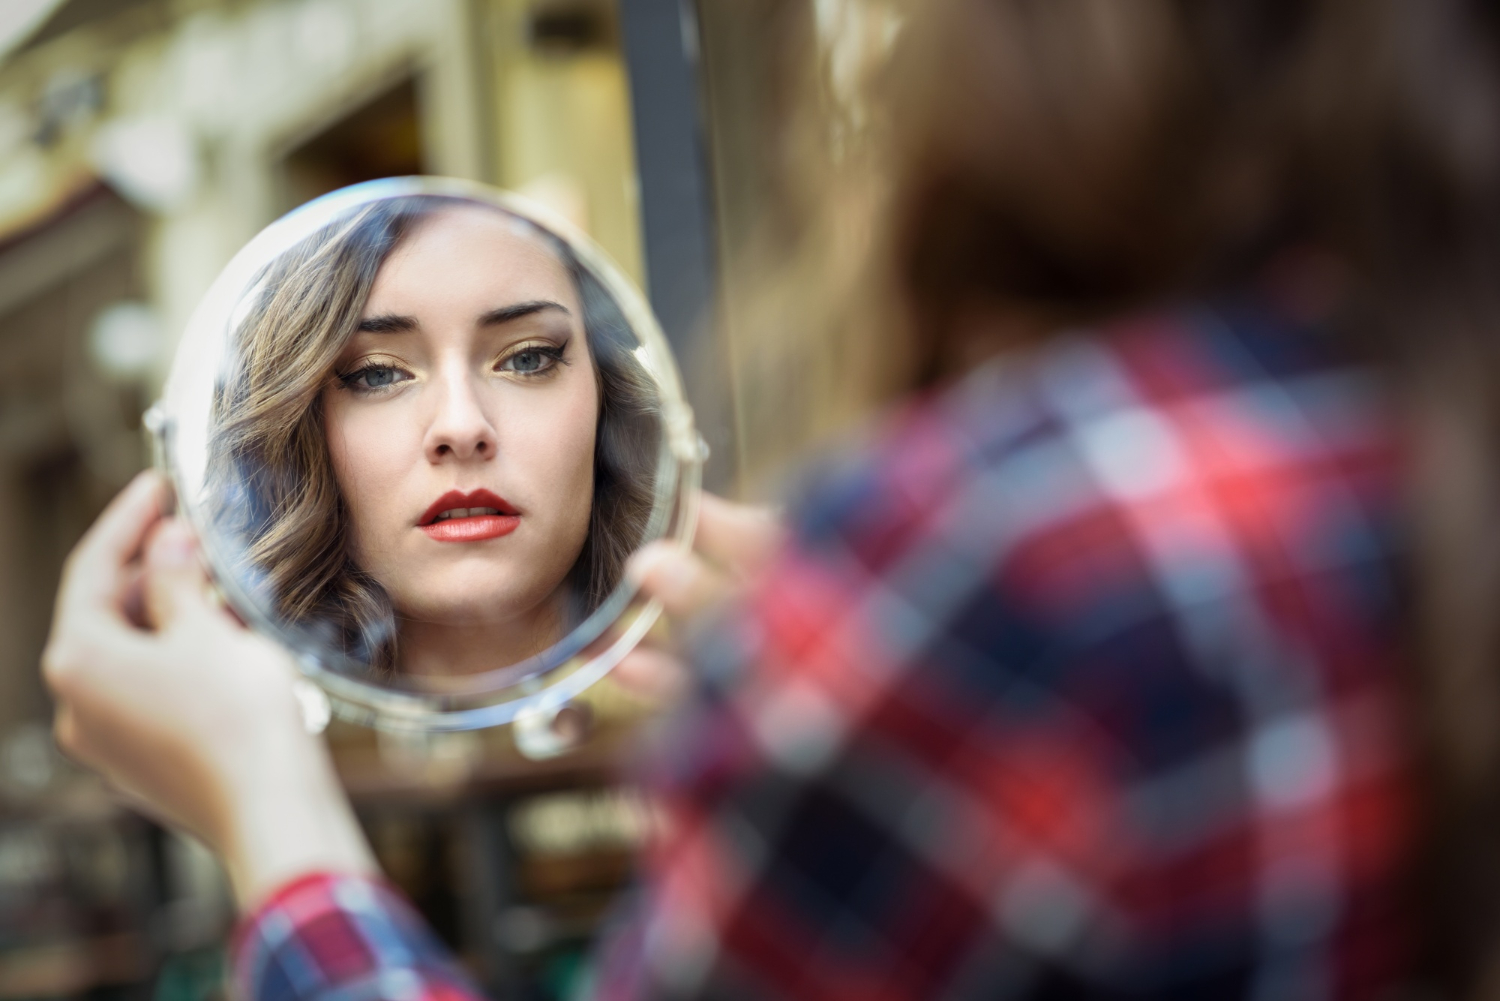 woman-looking-mirror_javi_indy_freepik.jpg